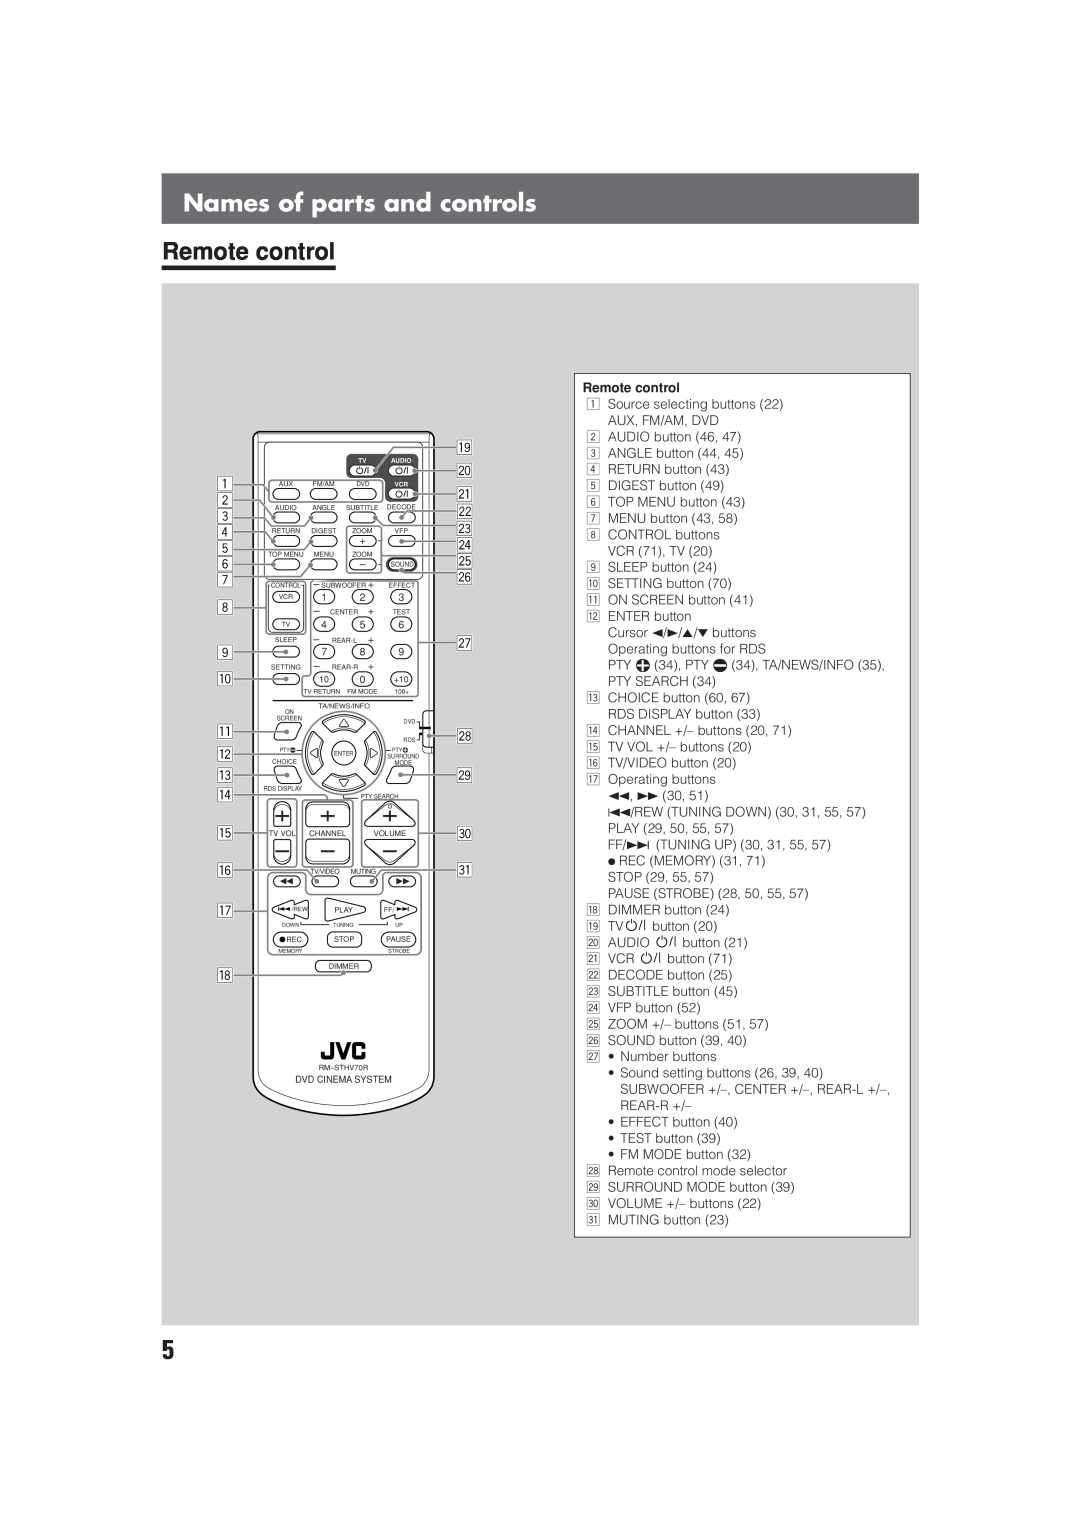 JVC LVT0865-004A manual Names of parts and controls, Remote control, 1 2 3 4 5 6 7 8 9 p q w e r t y u, a s df g h j k l 